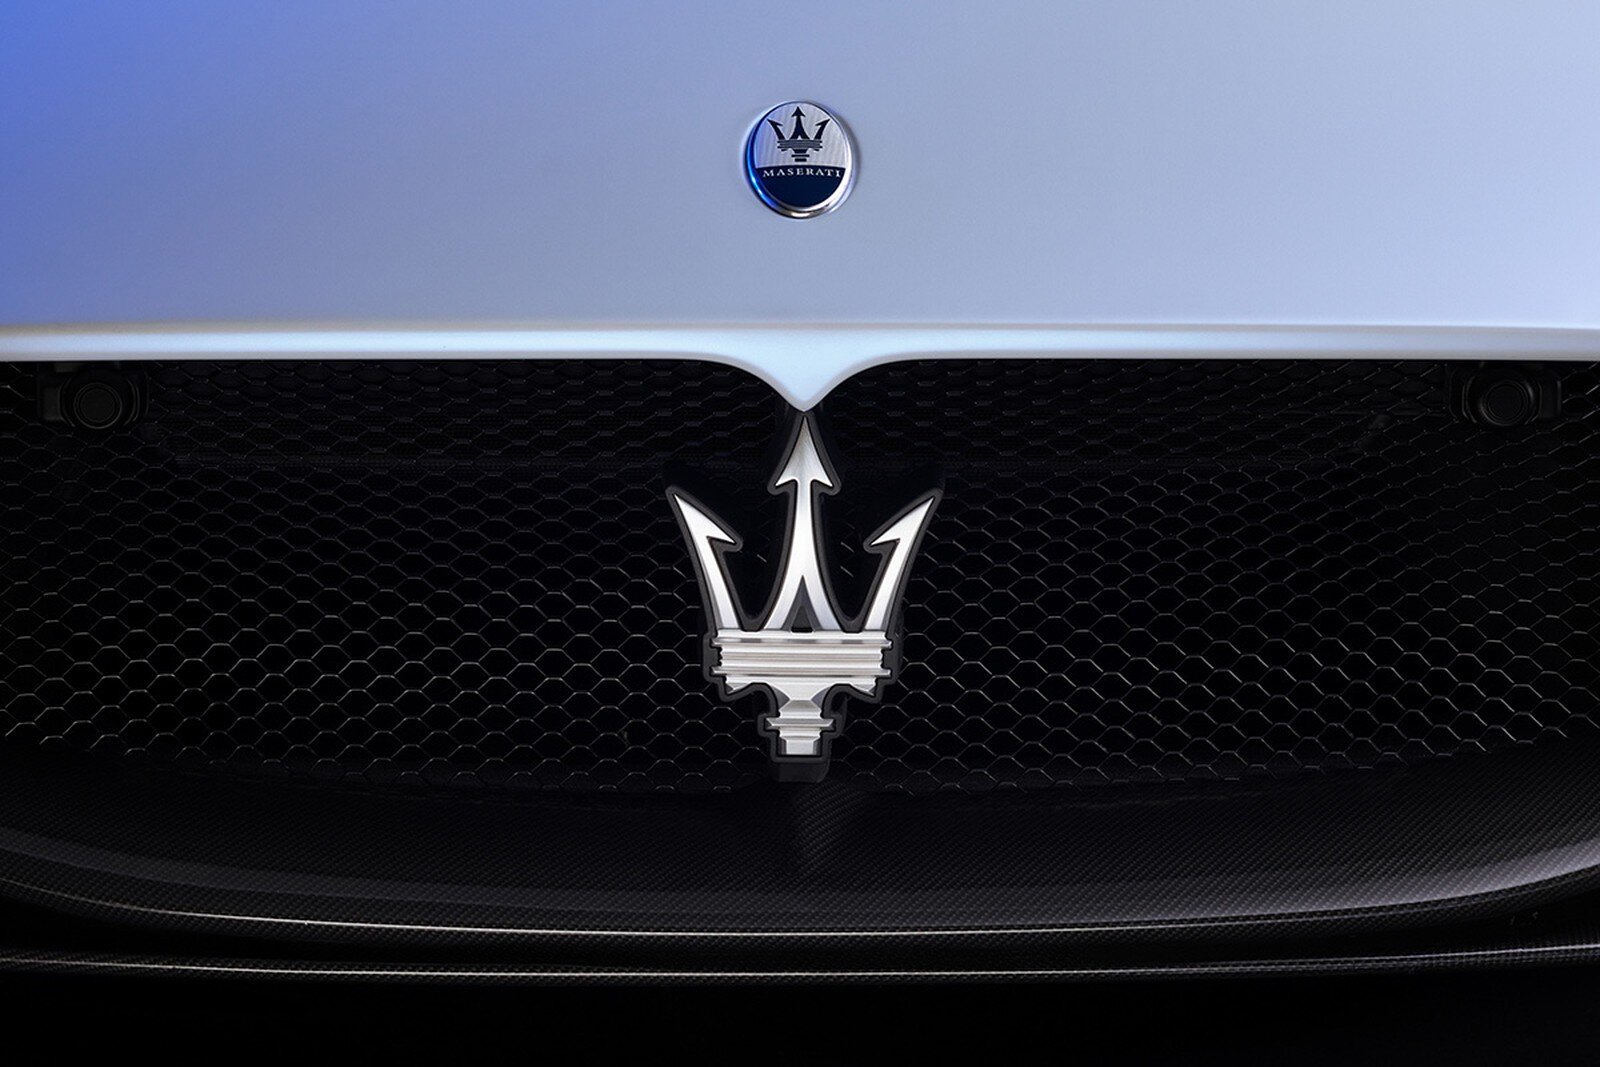 Машина знак трезубец. Трезубец Мазерати. Maserati шильдик. Лейбл Мазерати. Мазерати логотип на машине.